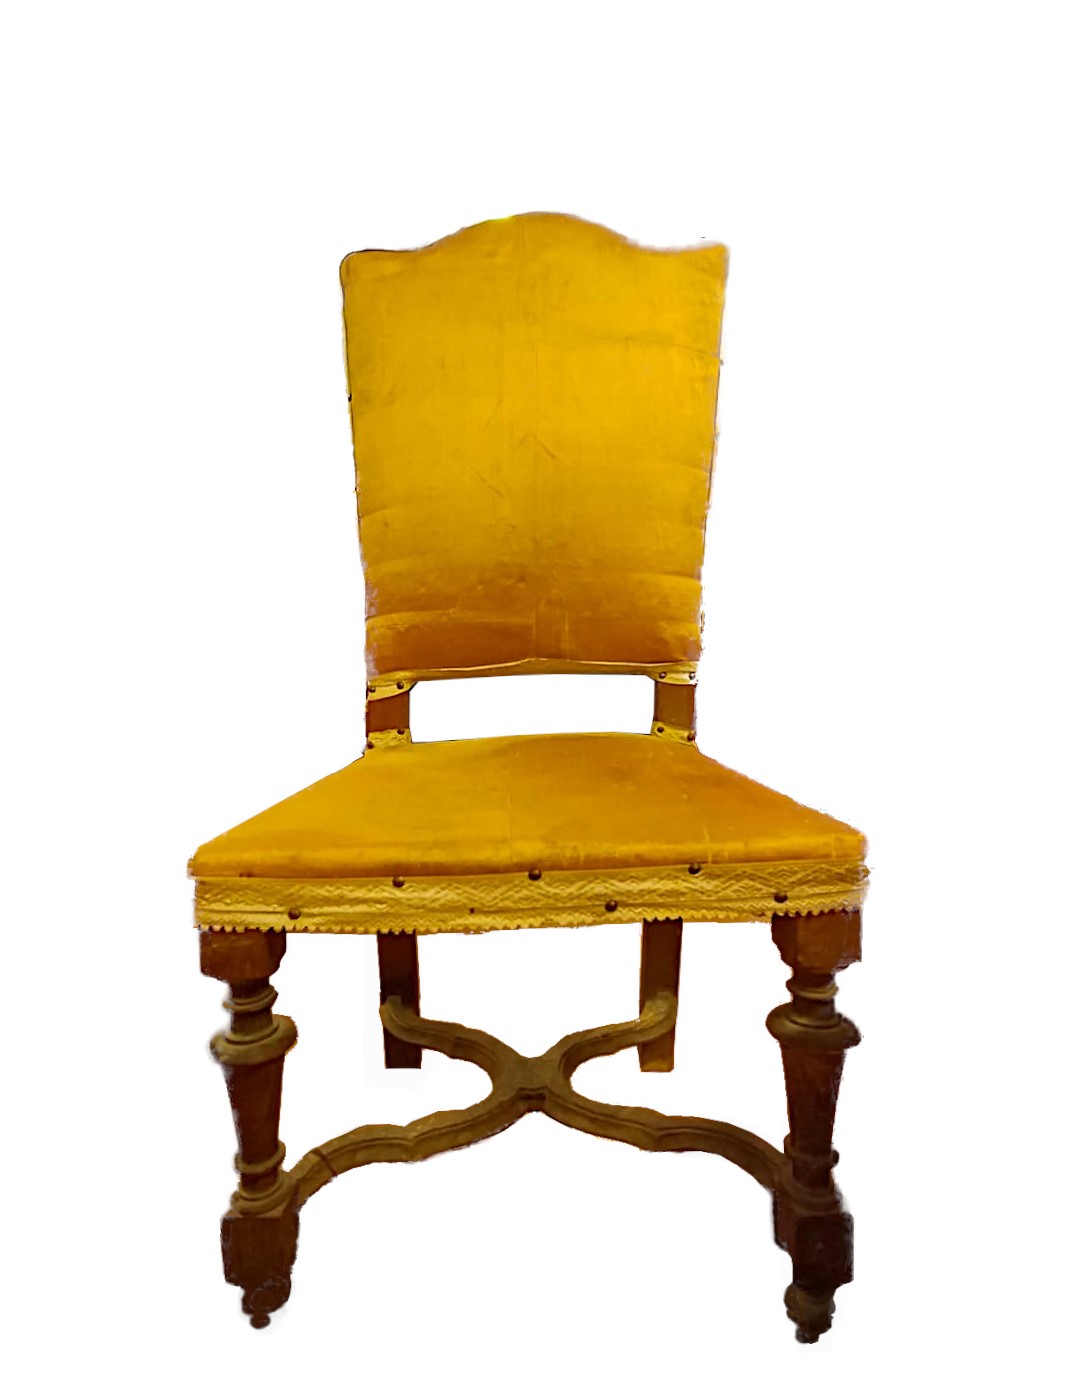 sedia-antica-legno-1600-emporiodellepassioni.com